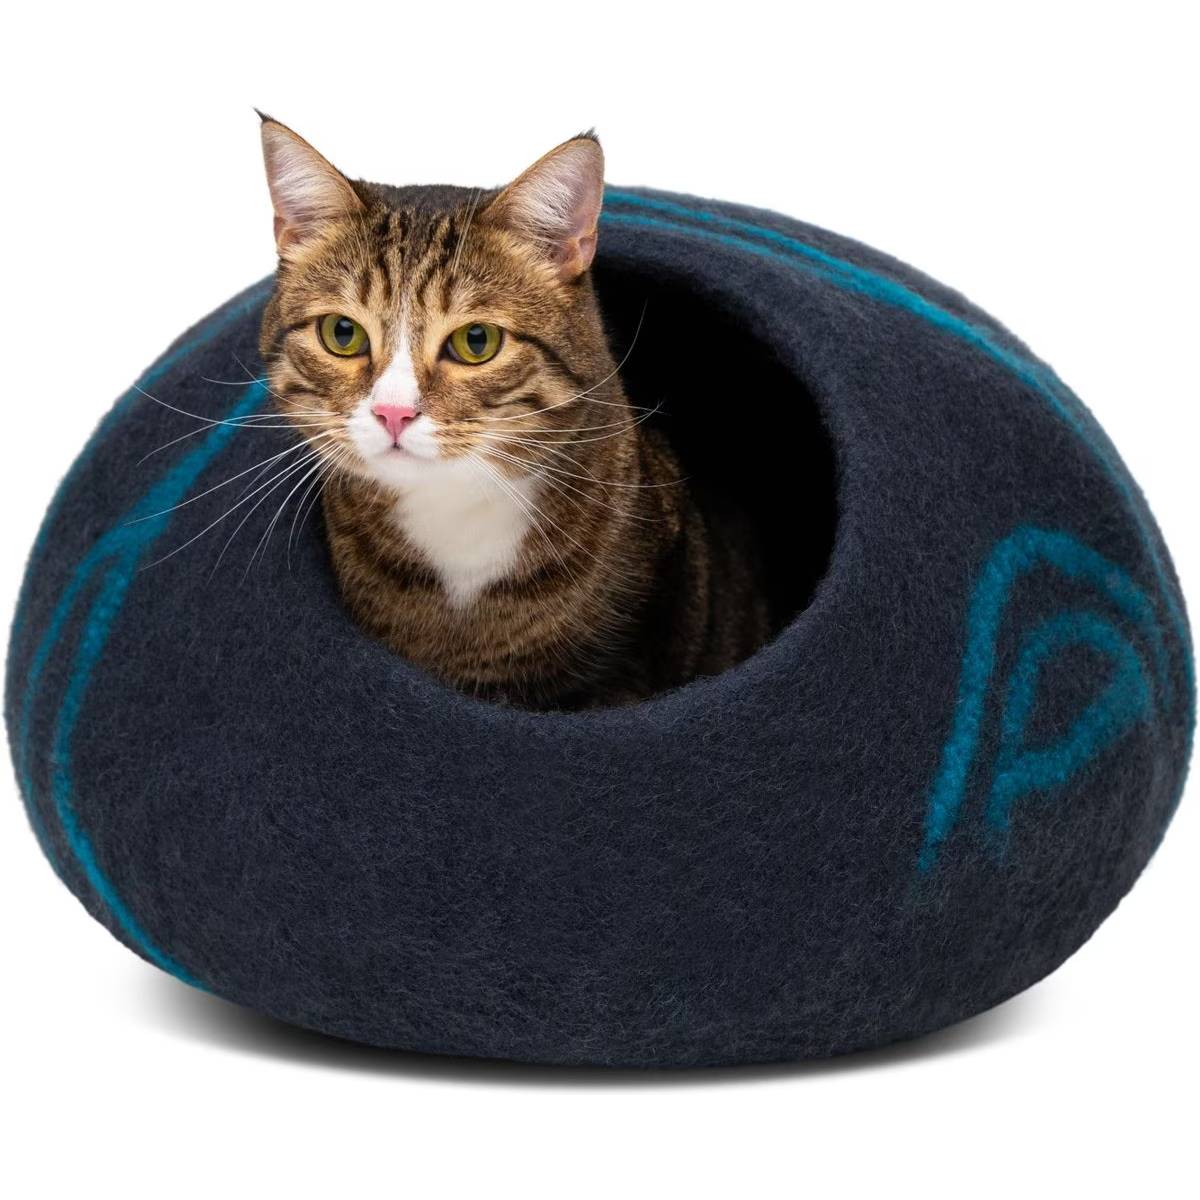 Meowfia Premium Felt Cat Cave Bed